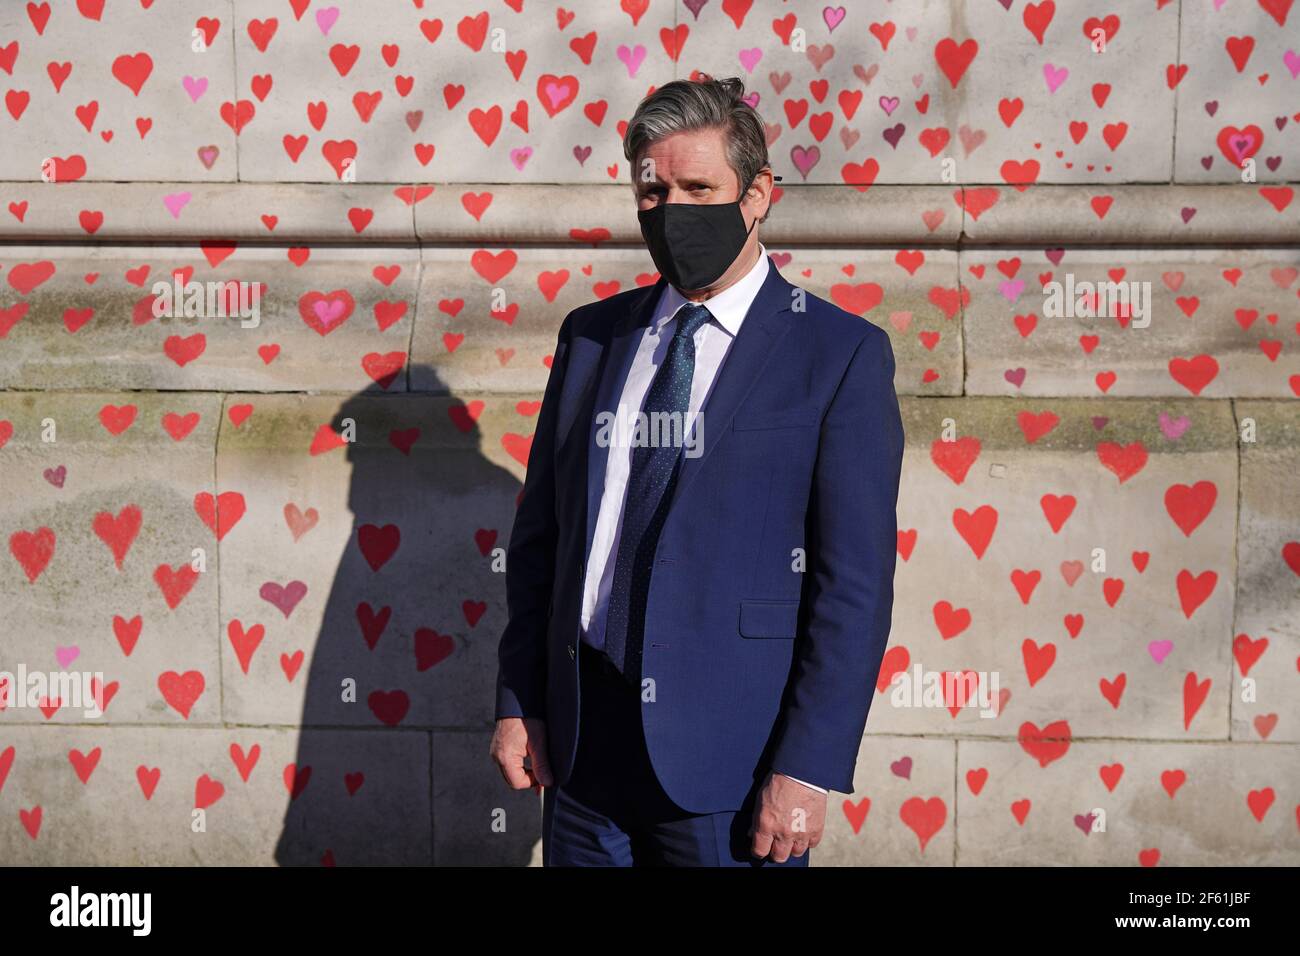 Der Parteivorsitzende der Labour Party Keir Starmer besucht die COVID-19 Gedenkmauer am Ufer im Zentrum von London, die mit Herzen gemalt wurde, um an die mehr als 145.000 Menschen zu erinnern, die in Großbritannien an dem Coronavirus gestorben sind. Bilddatum: Montag, 29. März 2021. Stockfoto